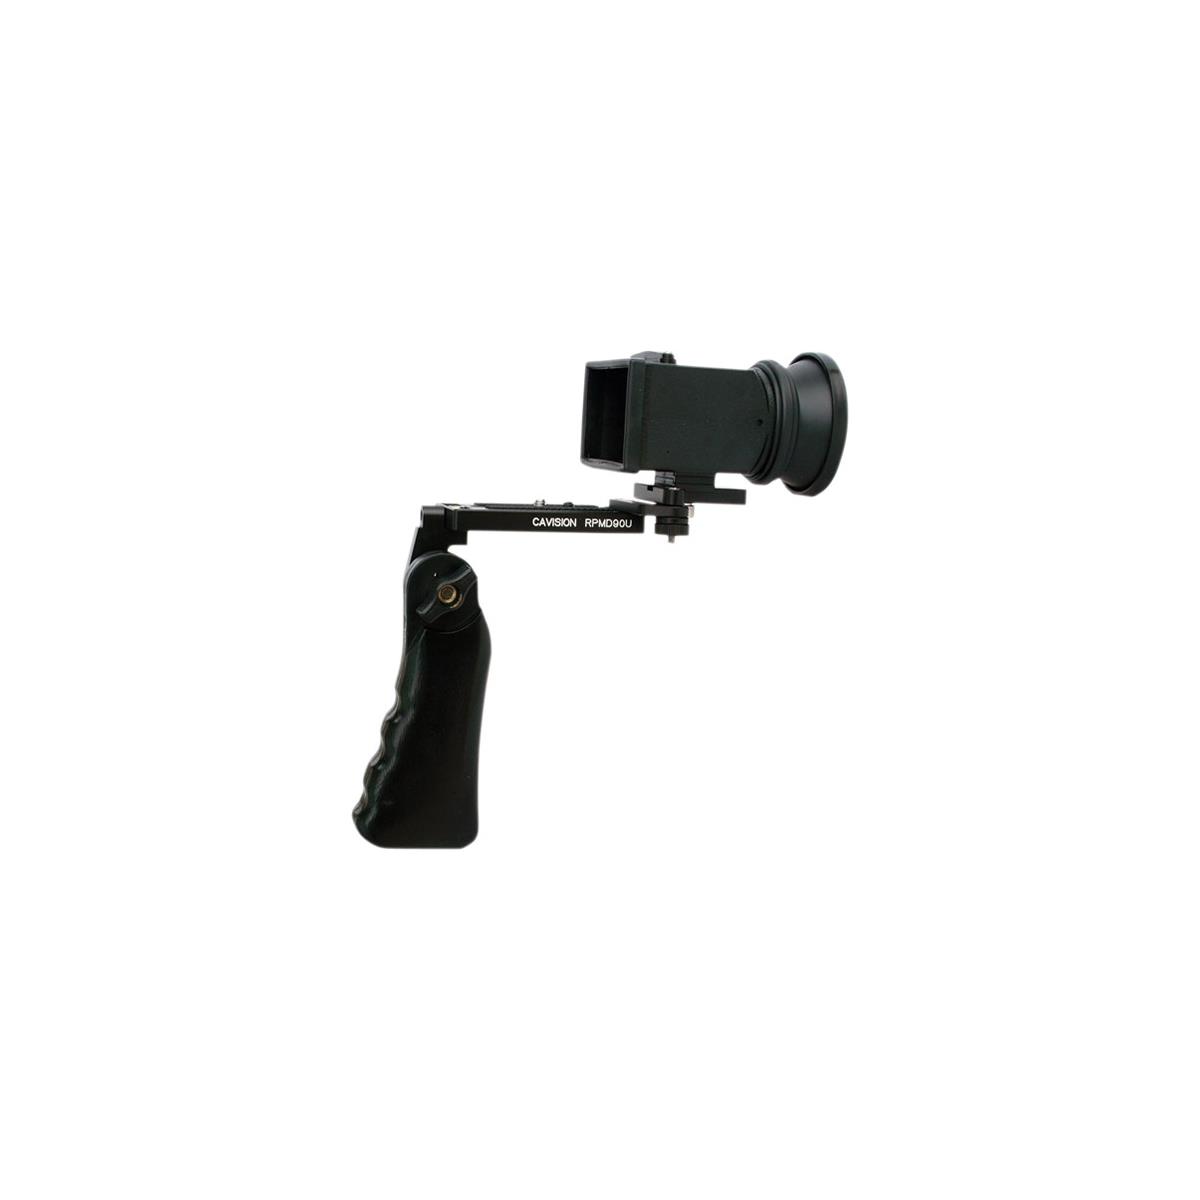 Комплект видоискателя Cavision с одной рукояткой для камеры Canon 5D Mark III